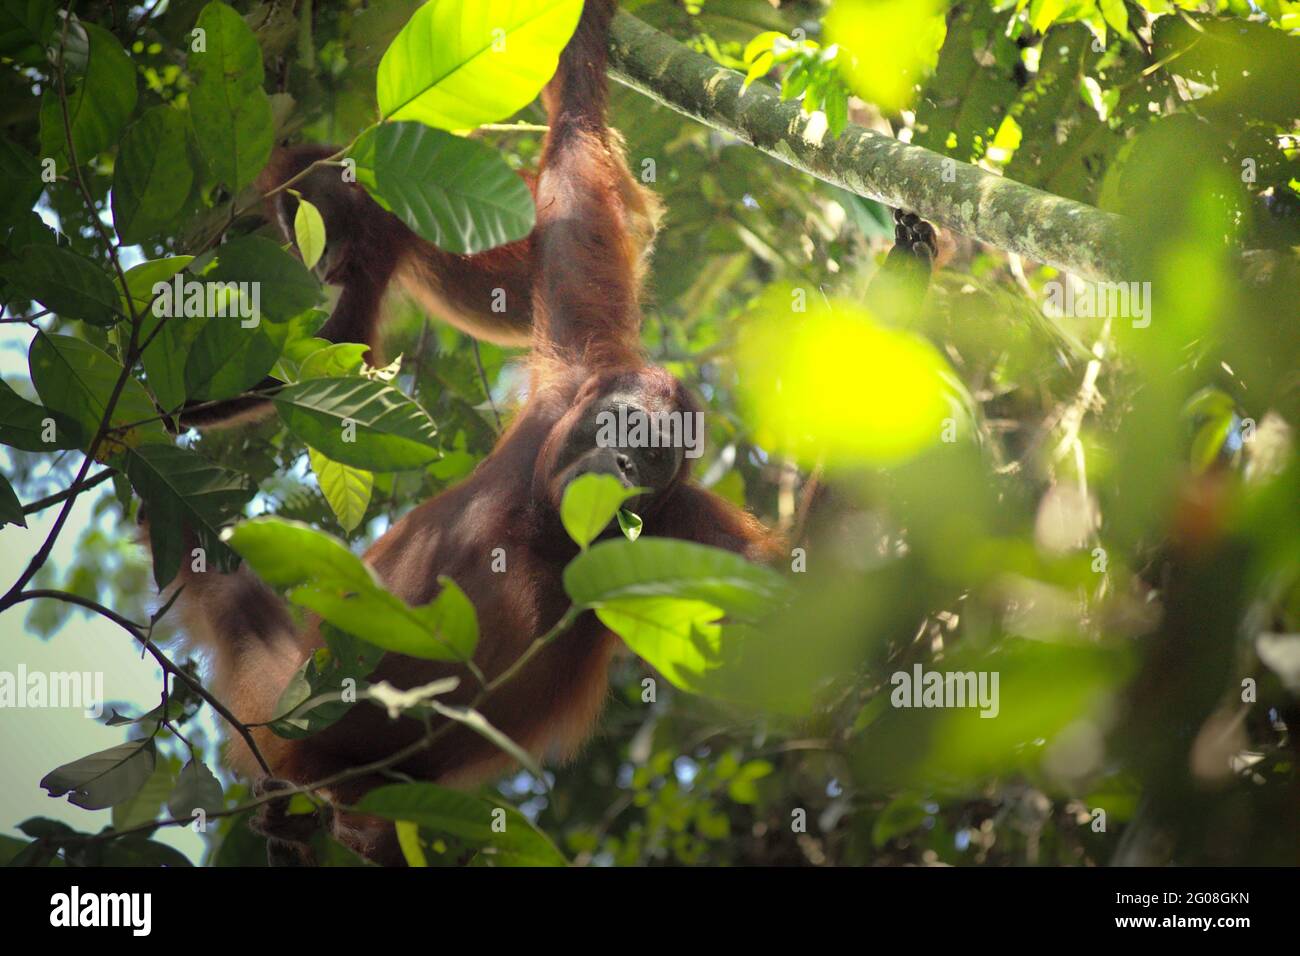 Orangutani selvatici nel Parco Nazionale di Kutai, Kalimantan Est, Indonesia. Sottospecie di orangutano borneano nordorientale (Pongo pygmaeus morio). Oltre alla deforestazione e al bracconaggio, il cambiamento climatico sta portando un maggior rischio di estinzione a questa specie endemica, a rischio critico. Temperature più elevate, condizioni climatiche insolite ed estreme, ad esempio, influenzeranno la disponibilità della loro fornitura alimentare. Foto Stock